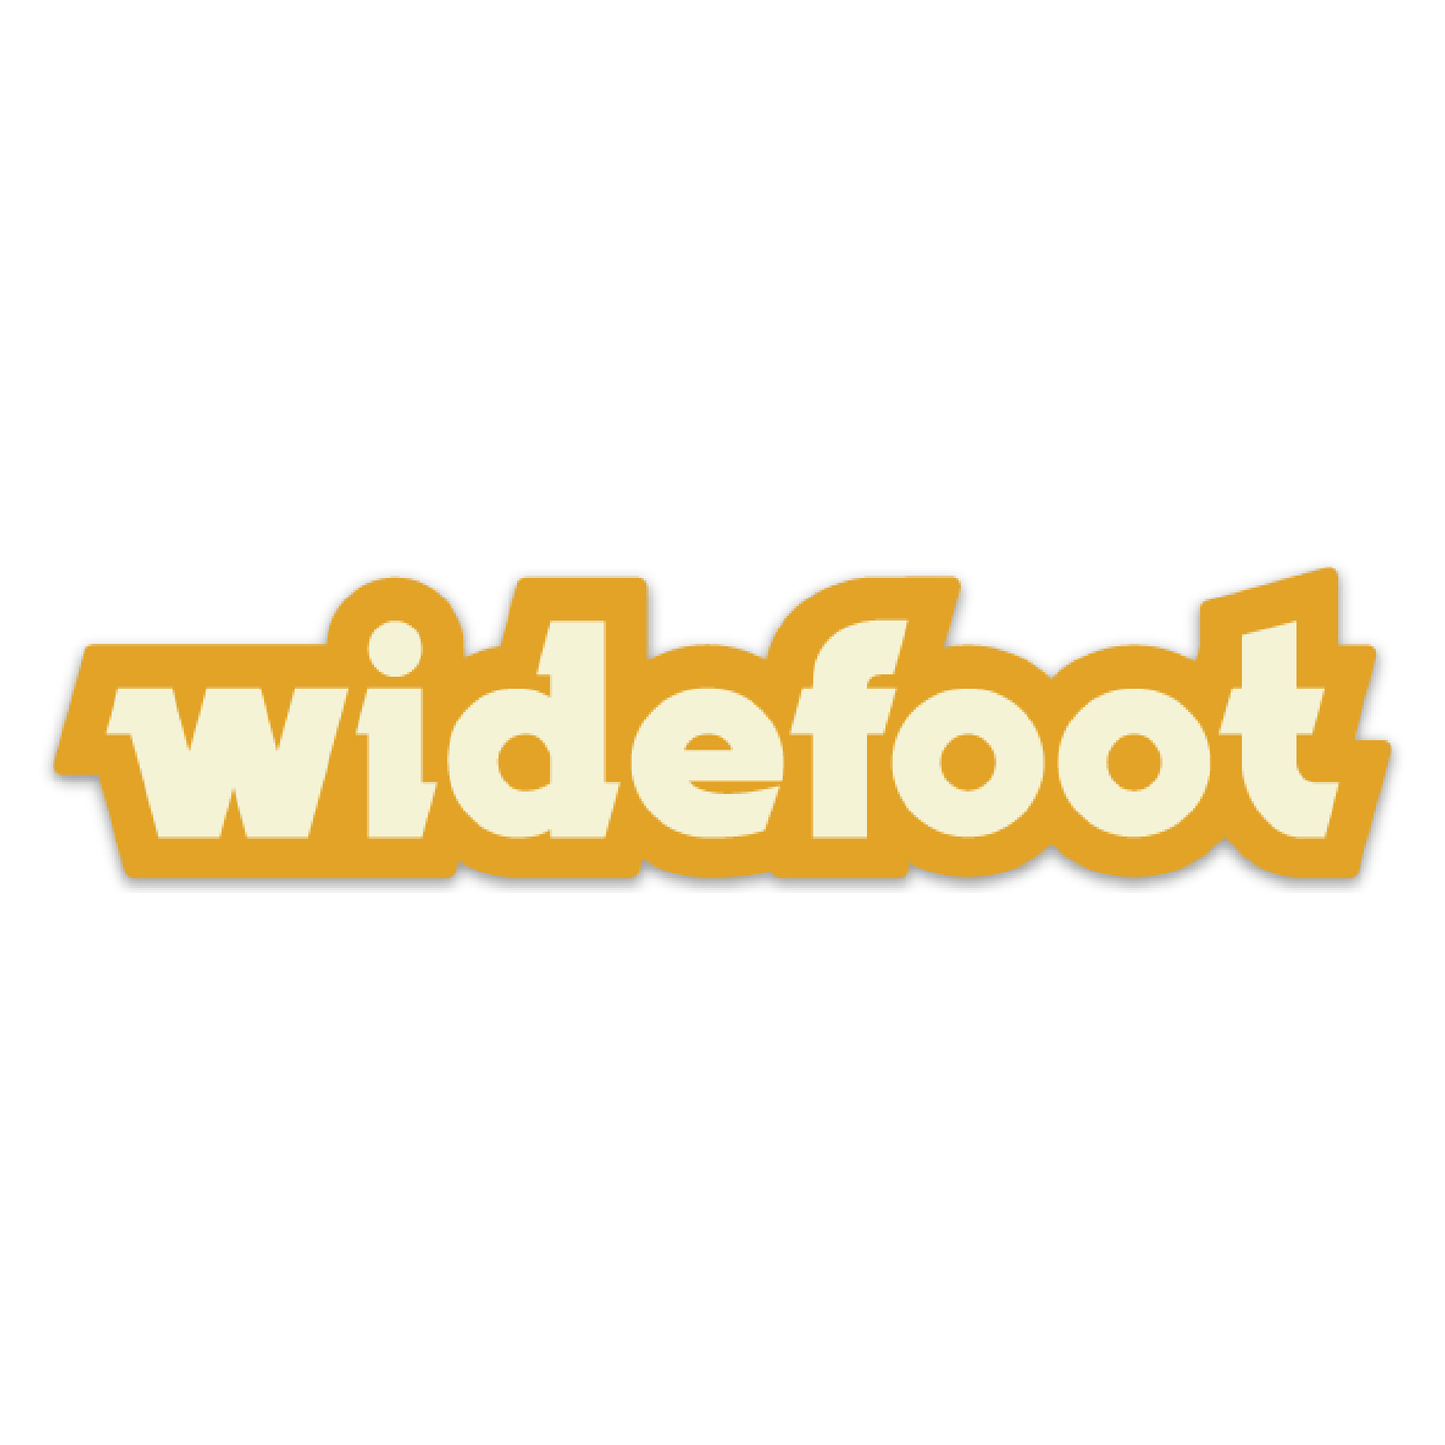 Widefoot Logotype Sticker, Yellow/White